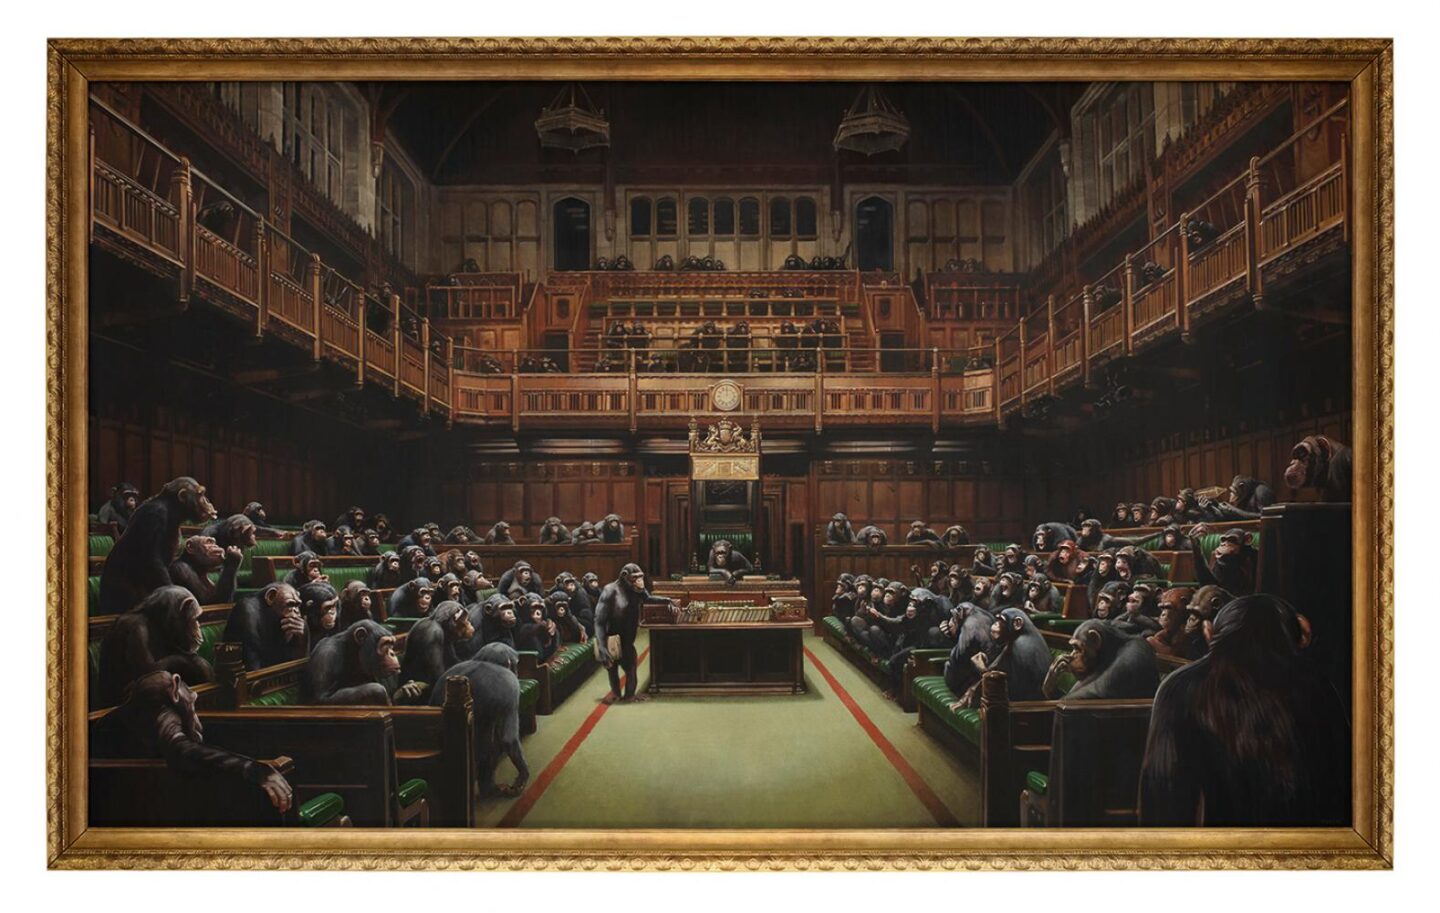 Banksys künstlerischer Aktivismus begeistert die Welt –, bild auf Leinwand, äffen im Parlament, Brexit